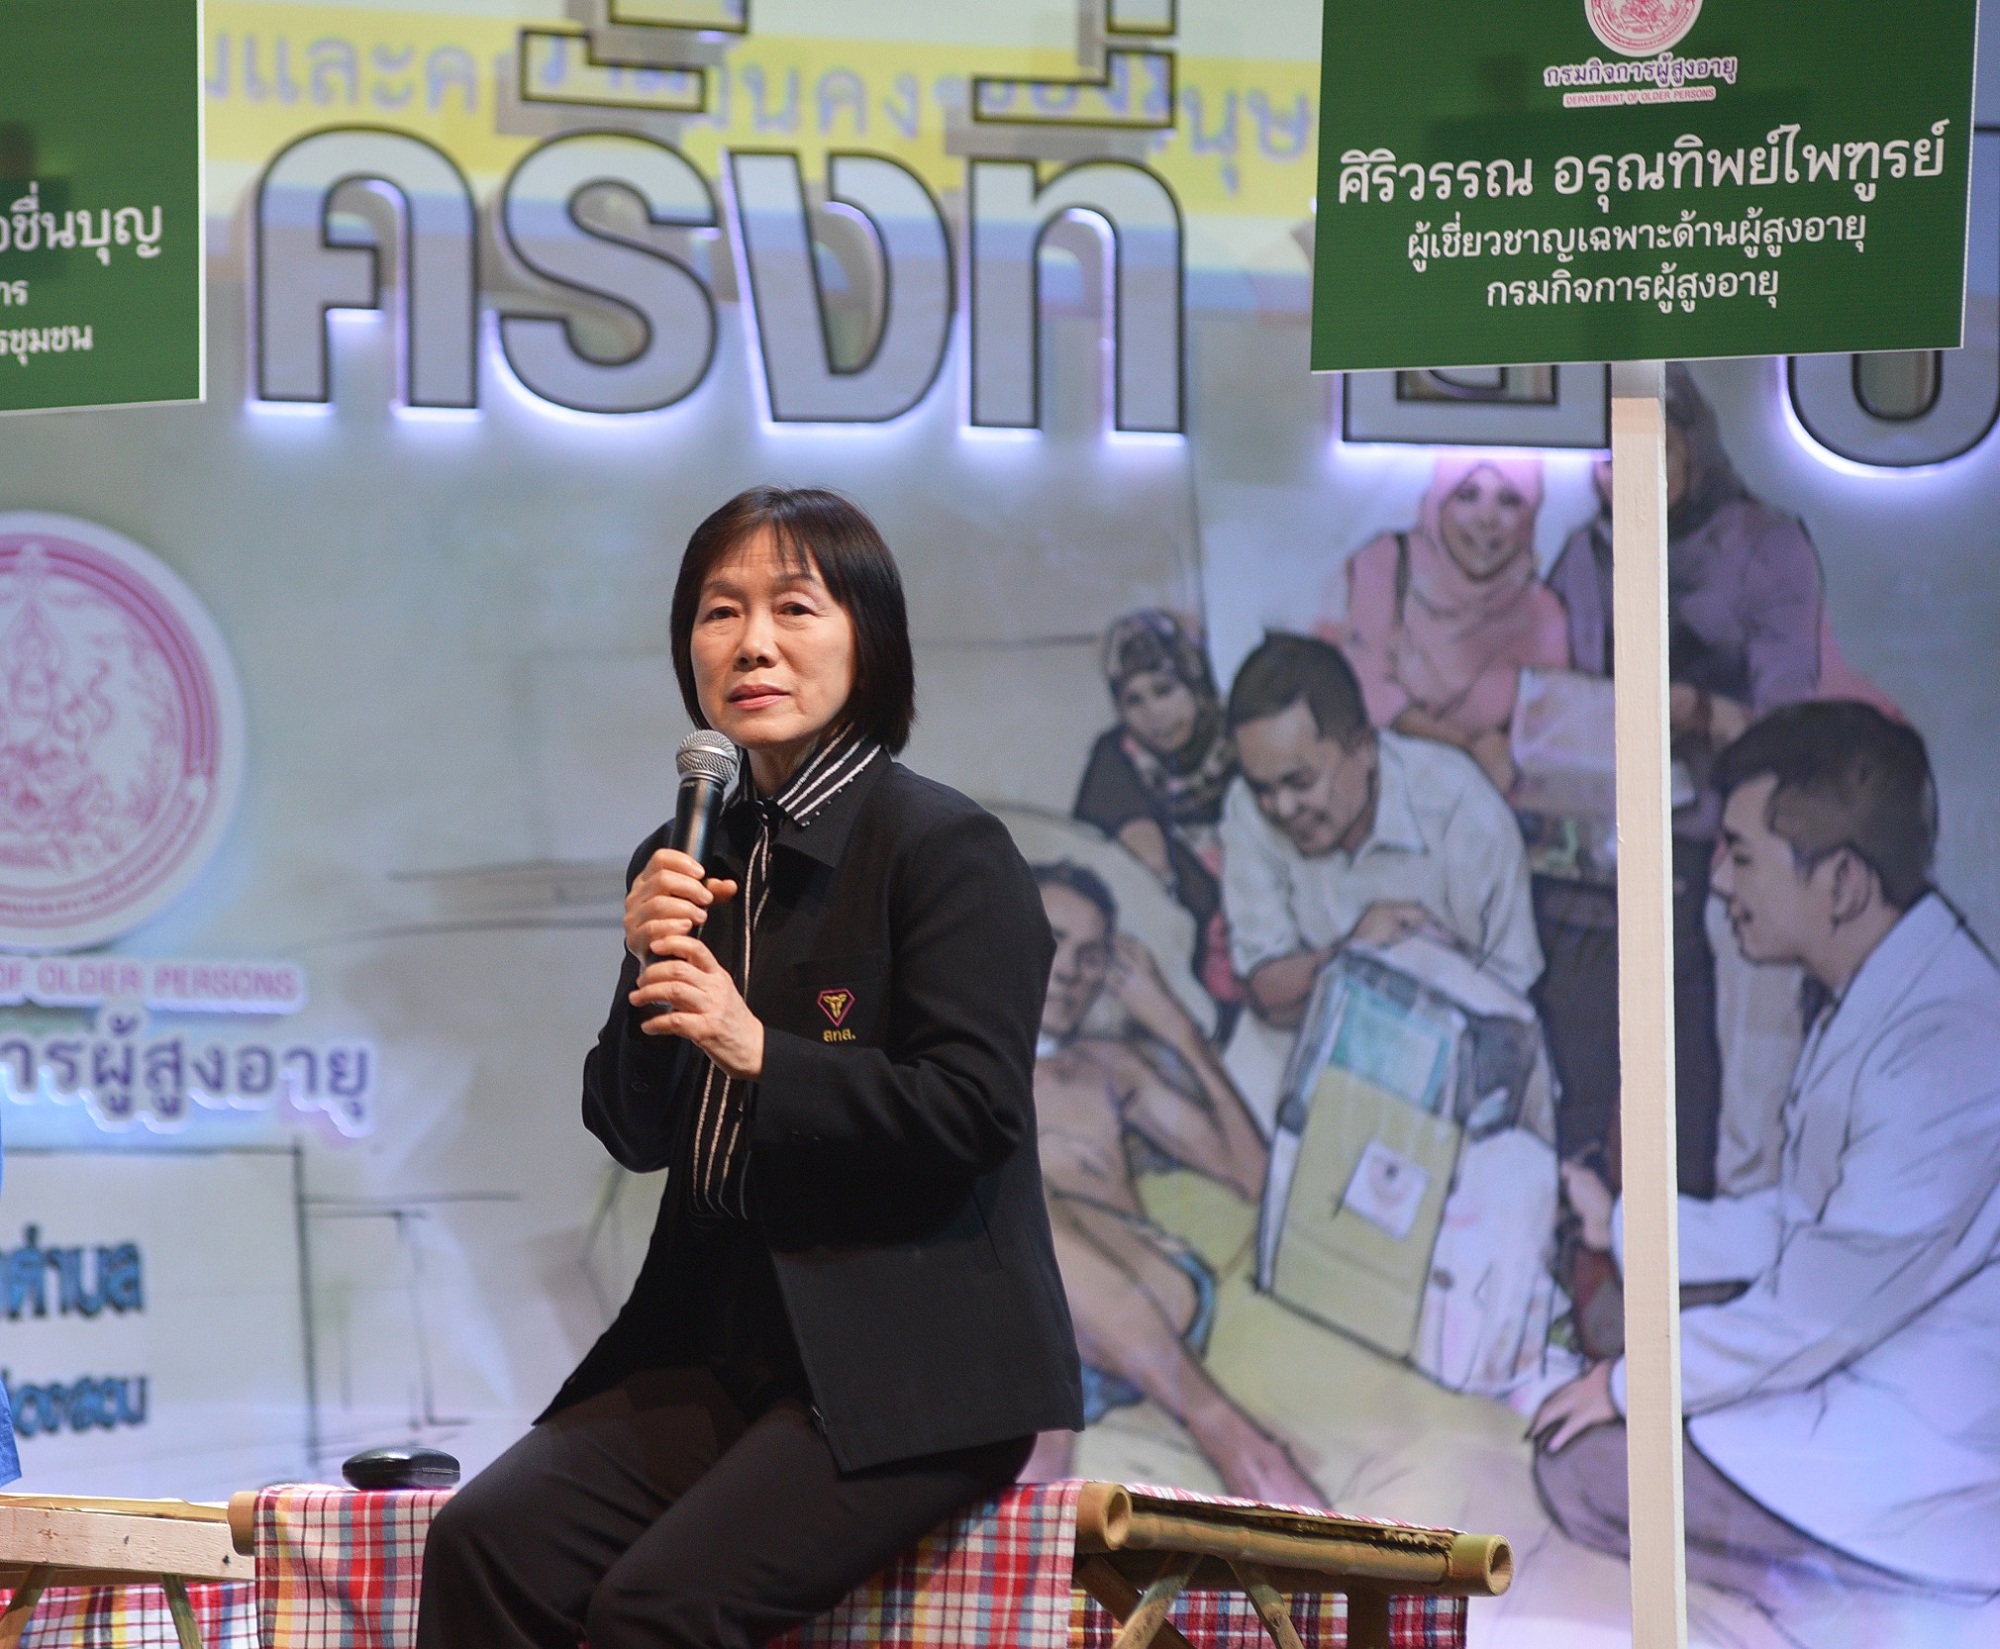 'ท้องถิ่นเข้มแข็ง' ก้าวสำคัญสู่การพัฒนายั่งยืน thaihealth